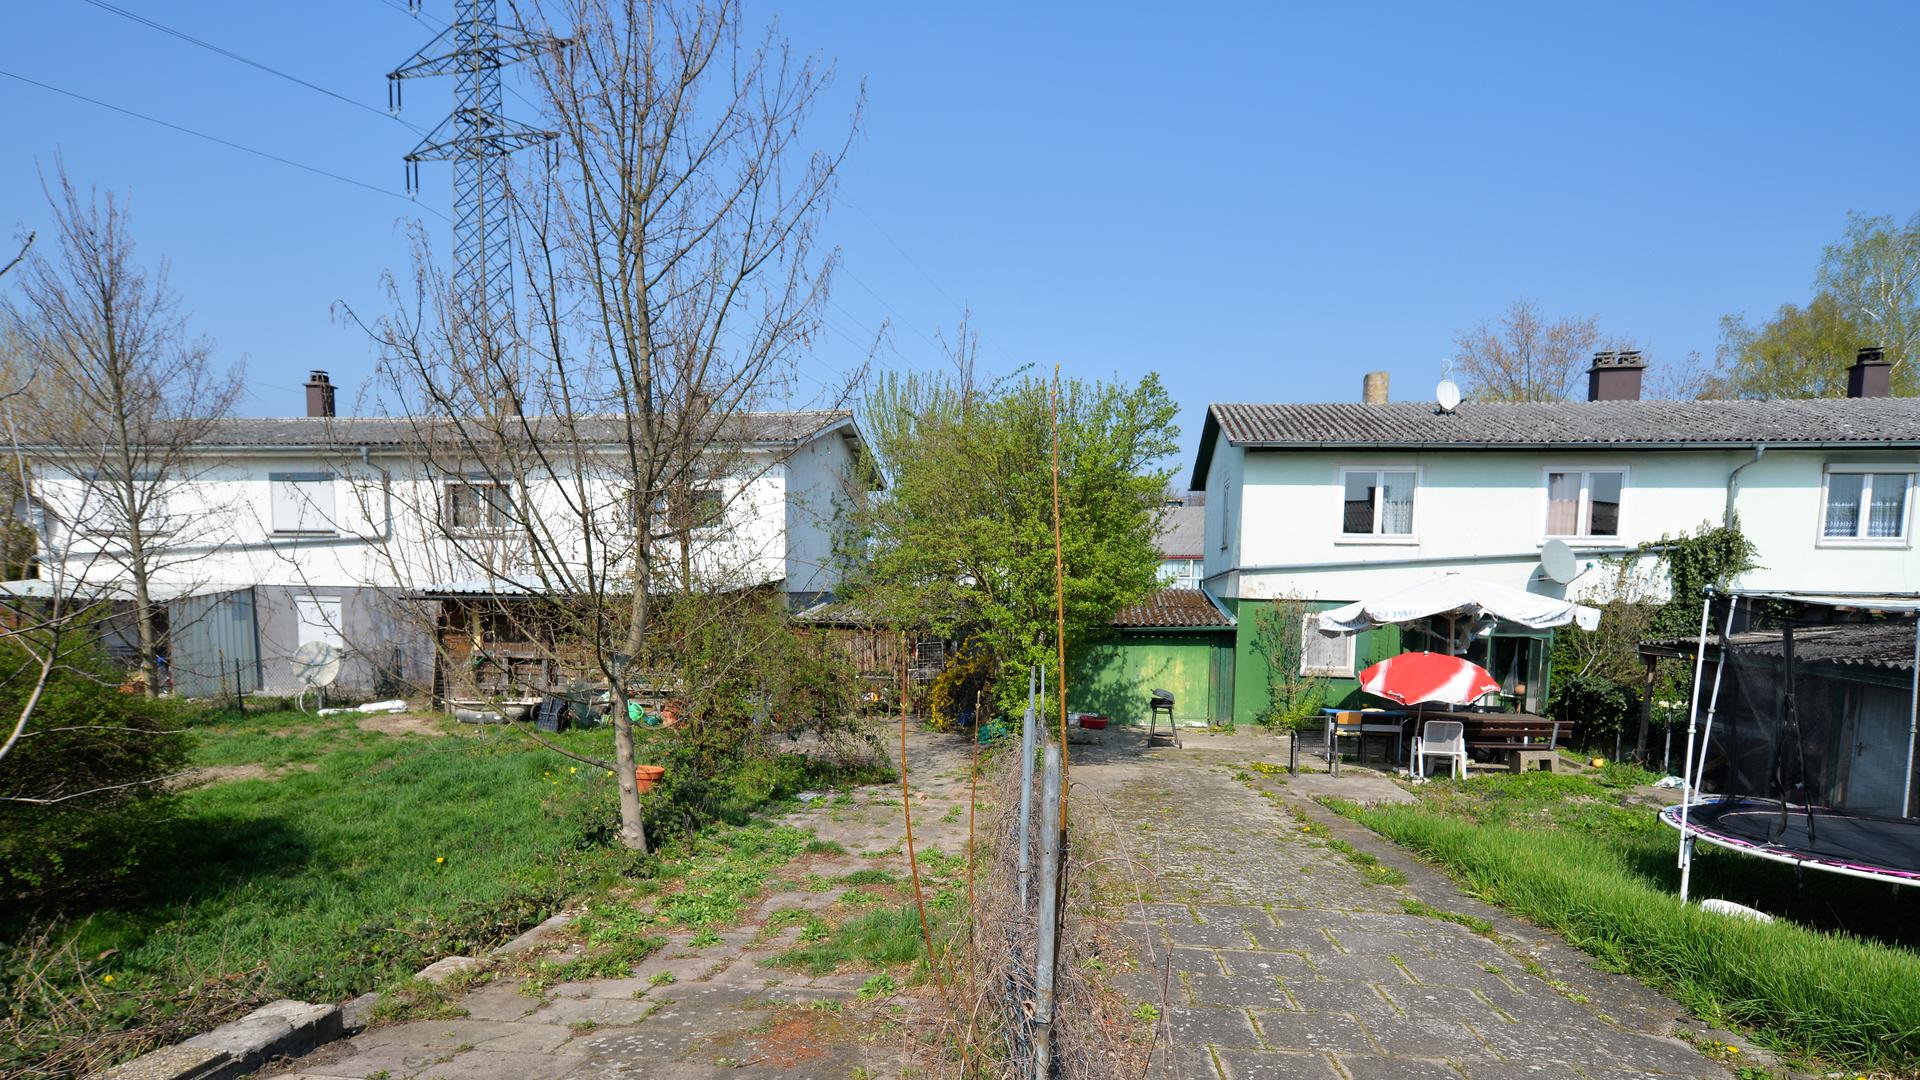 Die 14 Doppelhaushälften mit Sozialwohnungen in der Dr.-Georg-Schaeffler-Straße sollen abgerissen werden. Die Mieter wehren sich.